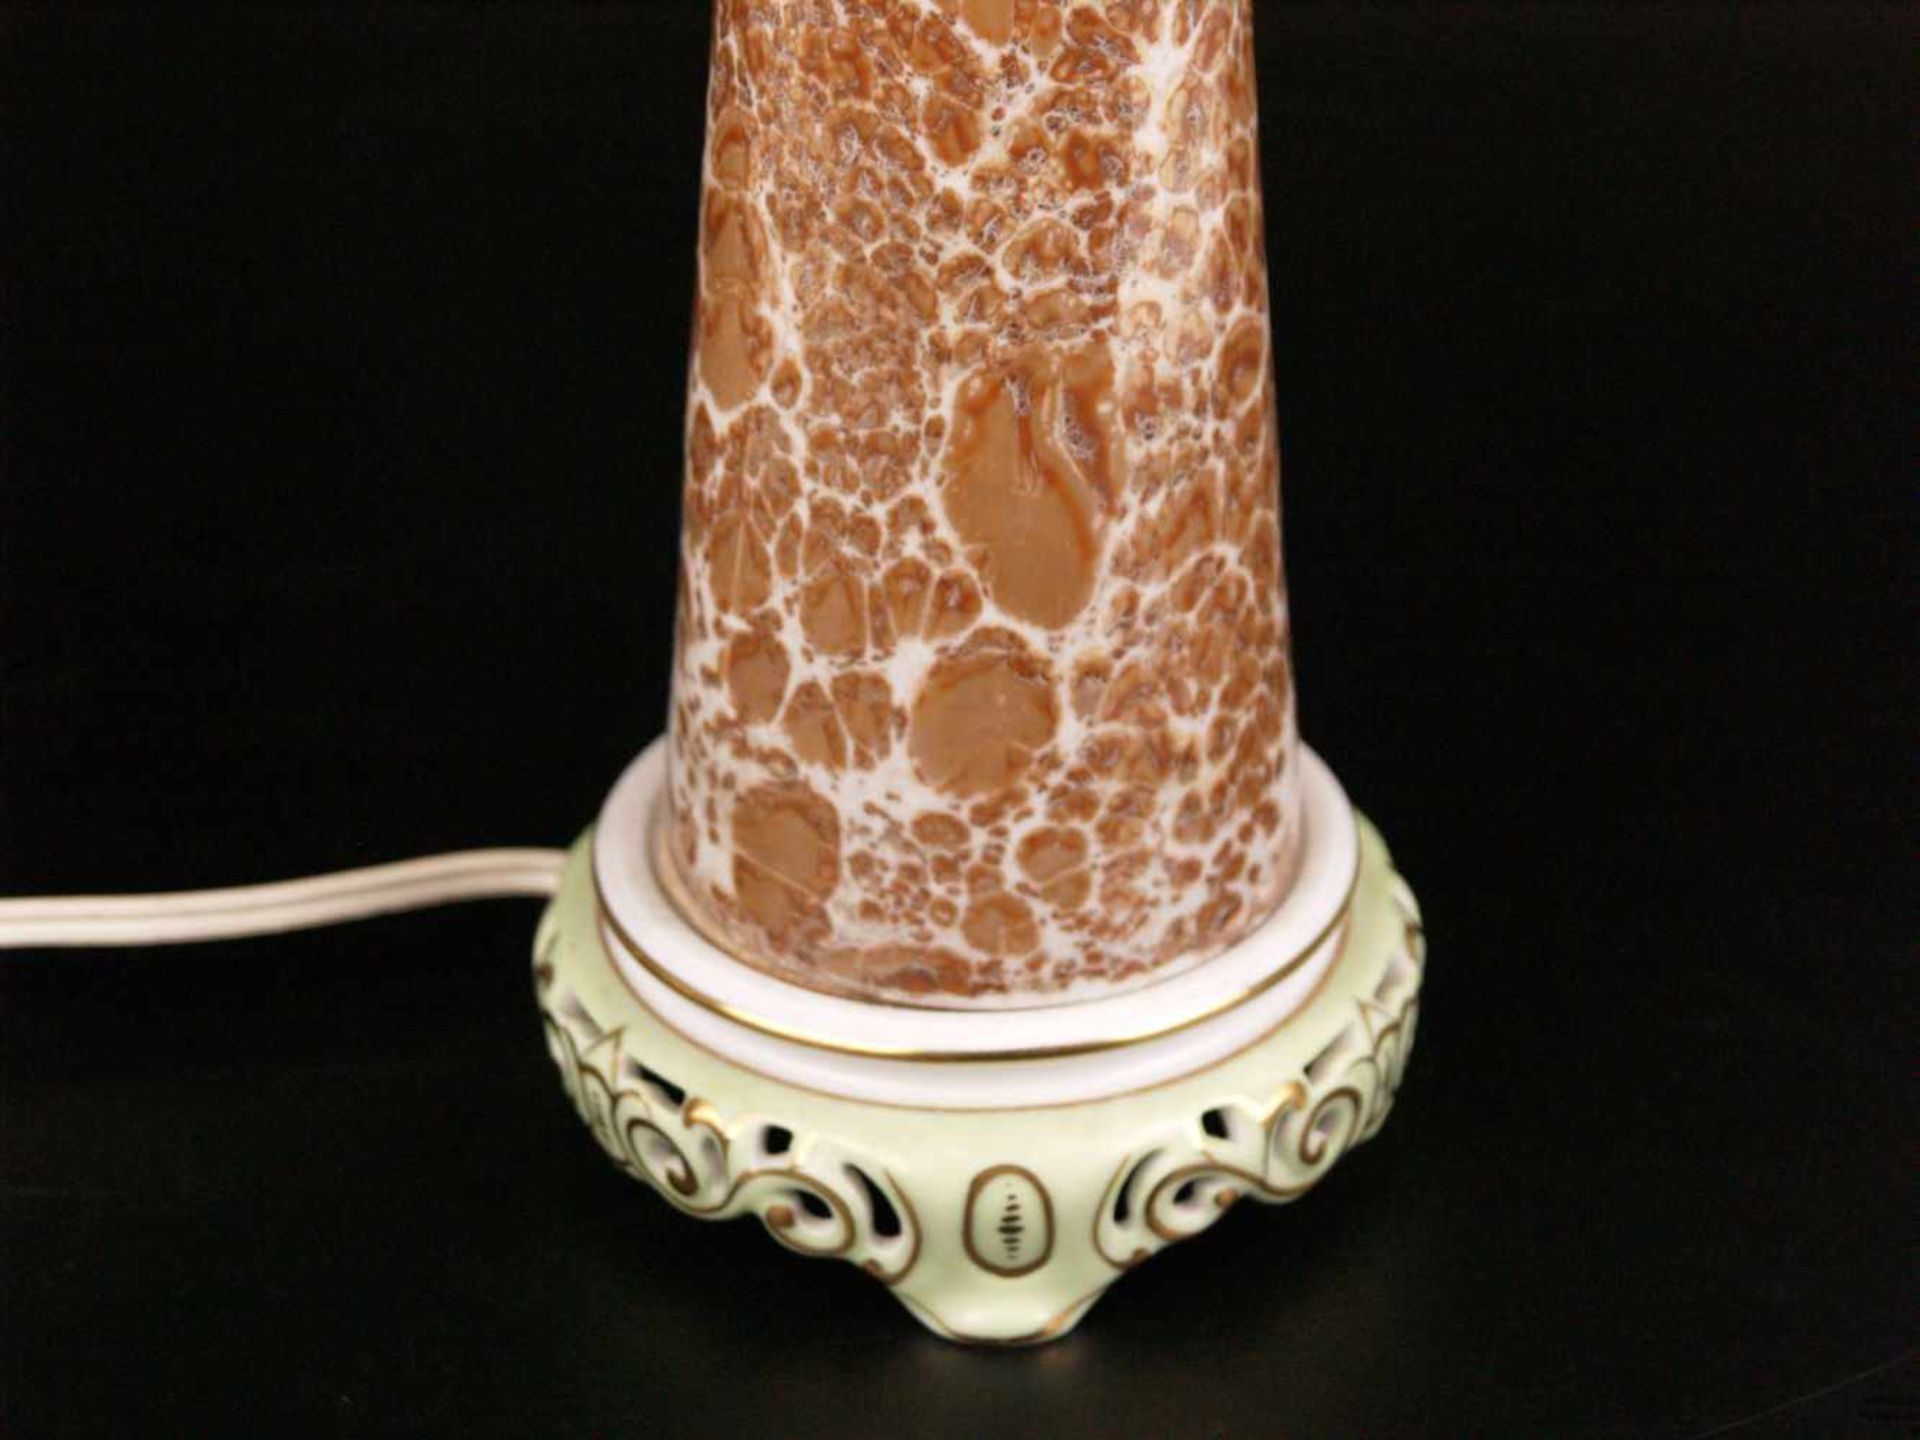 Lampe- Porzellan/Keramik/Metall, Lampensockel gemarkt Herend, Ungarn, konischer sich nach oben - Bild 4 aus 5